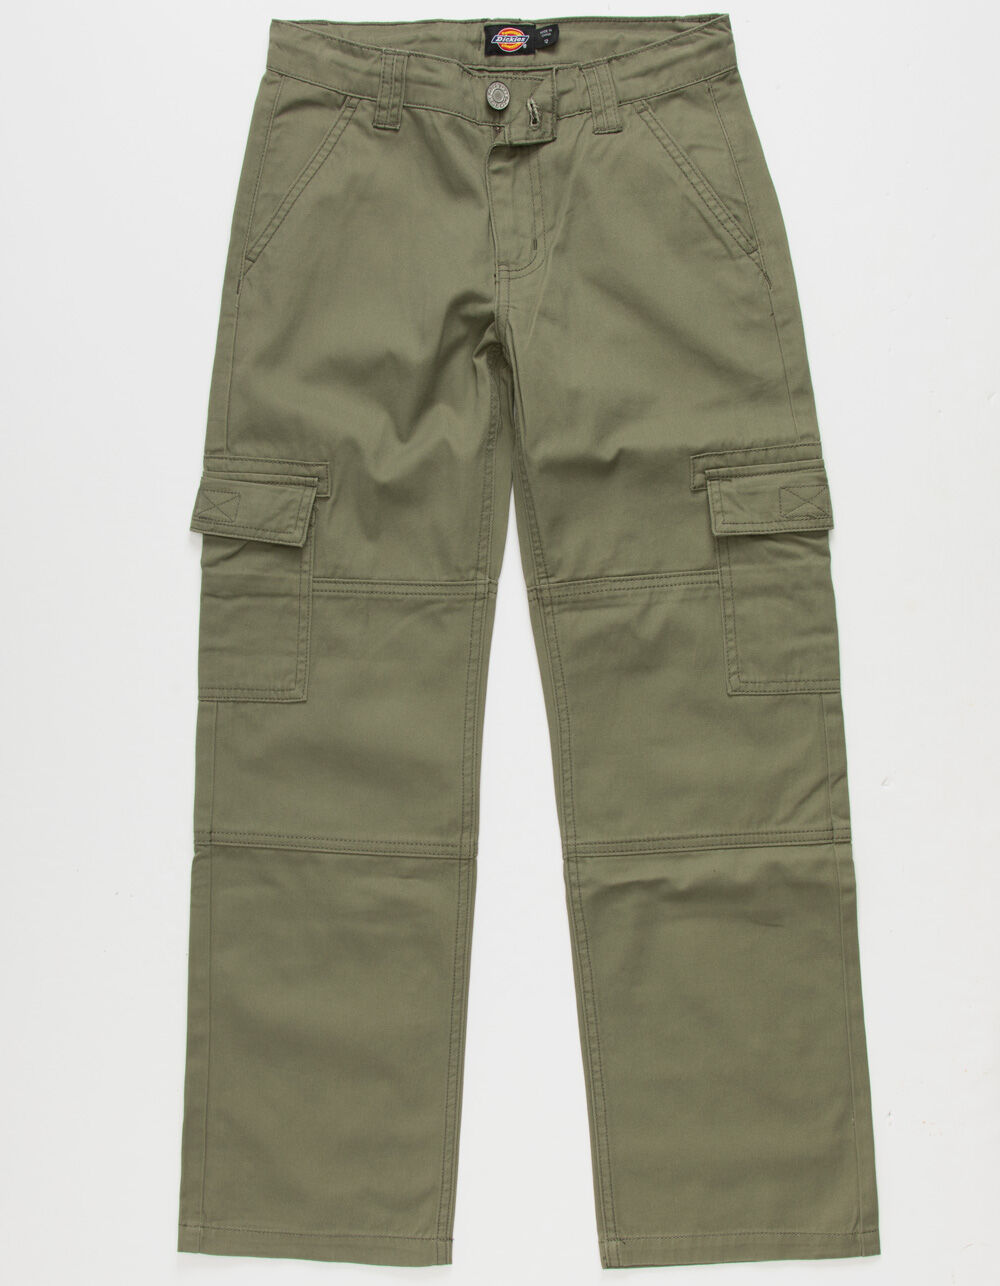 Kid's six-pocket cargo pants (Olive) Details